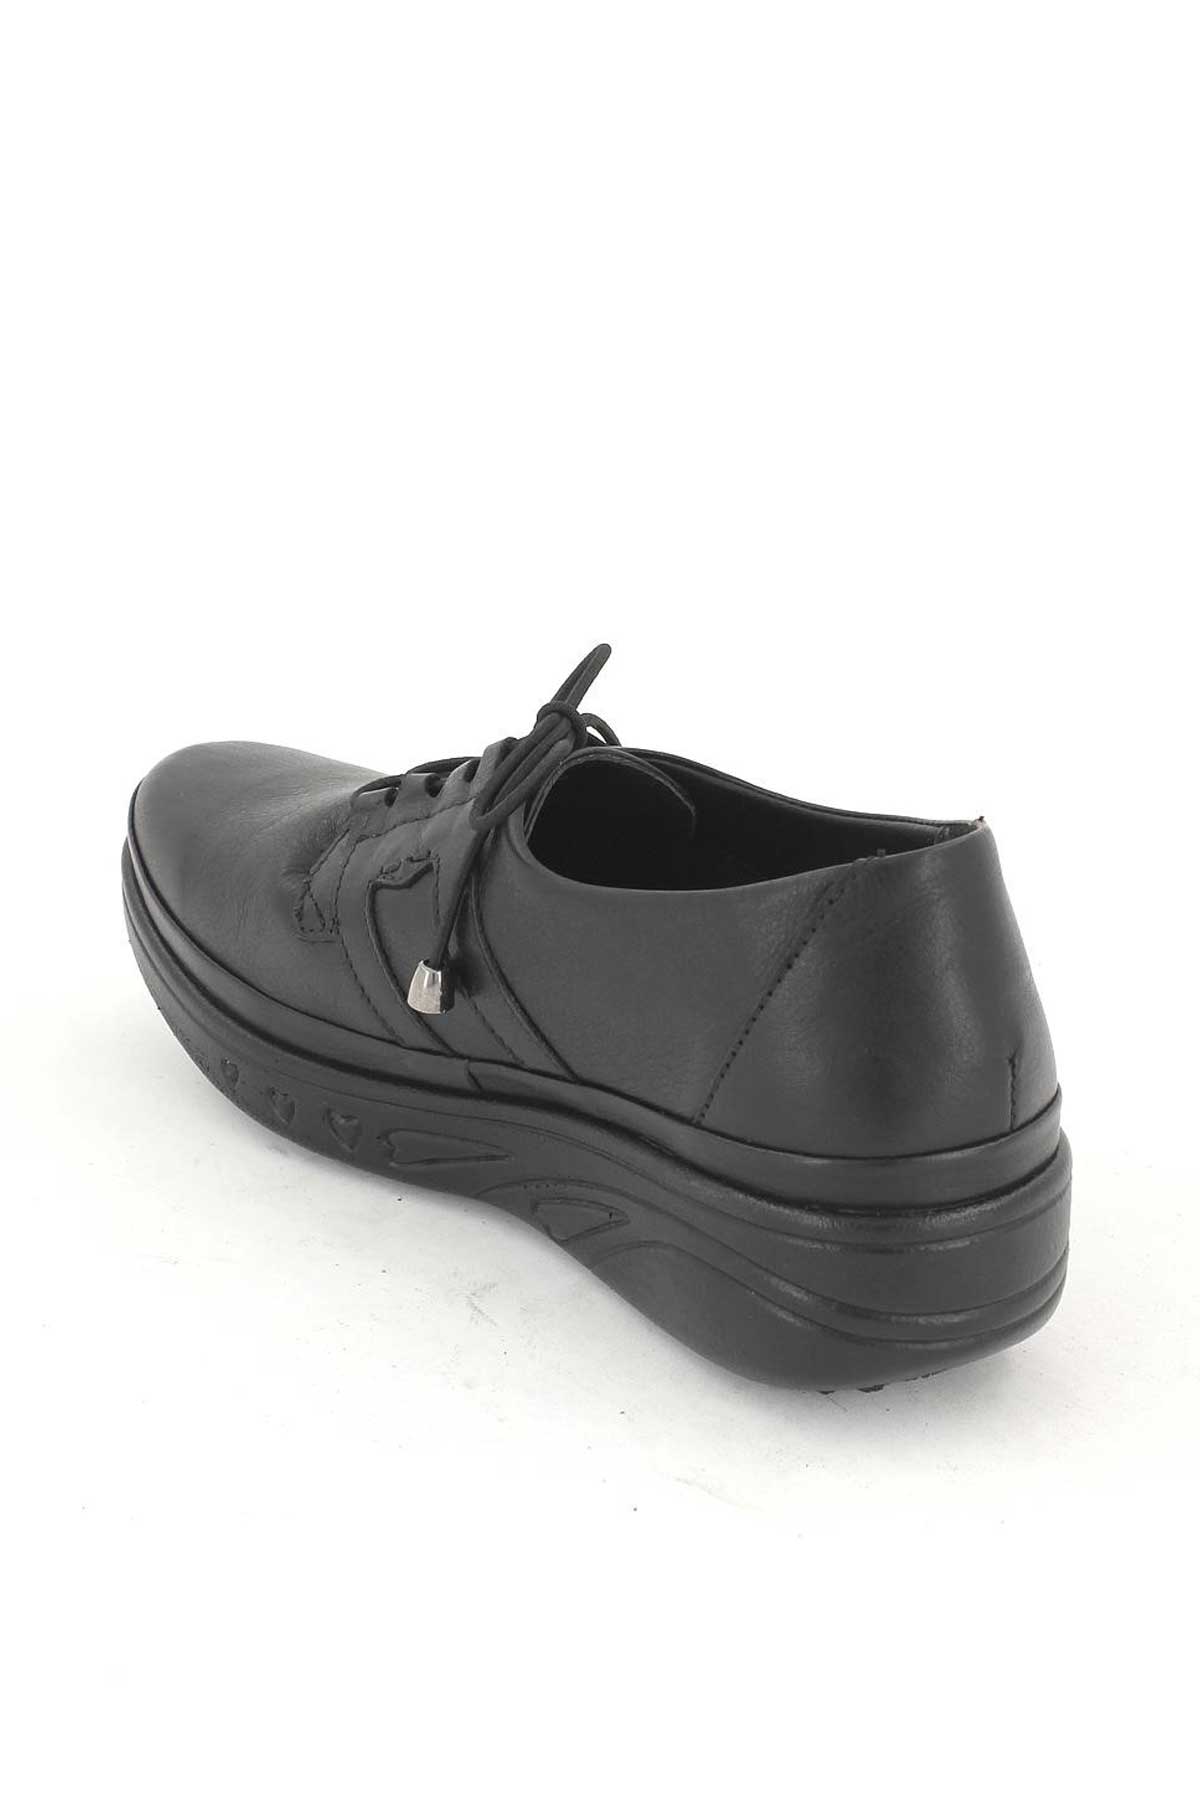 Kadın Airflow Deri Ayakkabı Siyah 1820519K